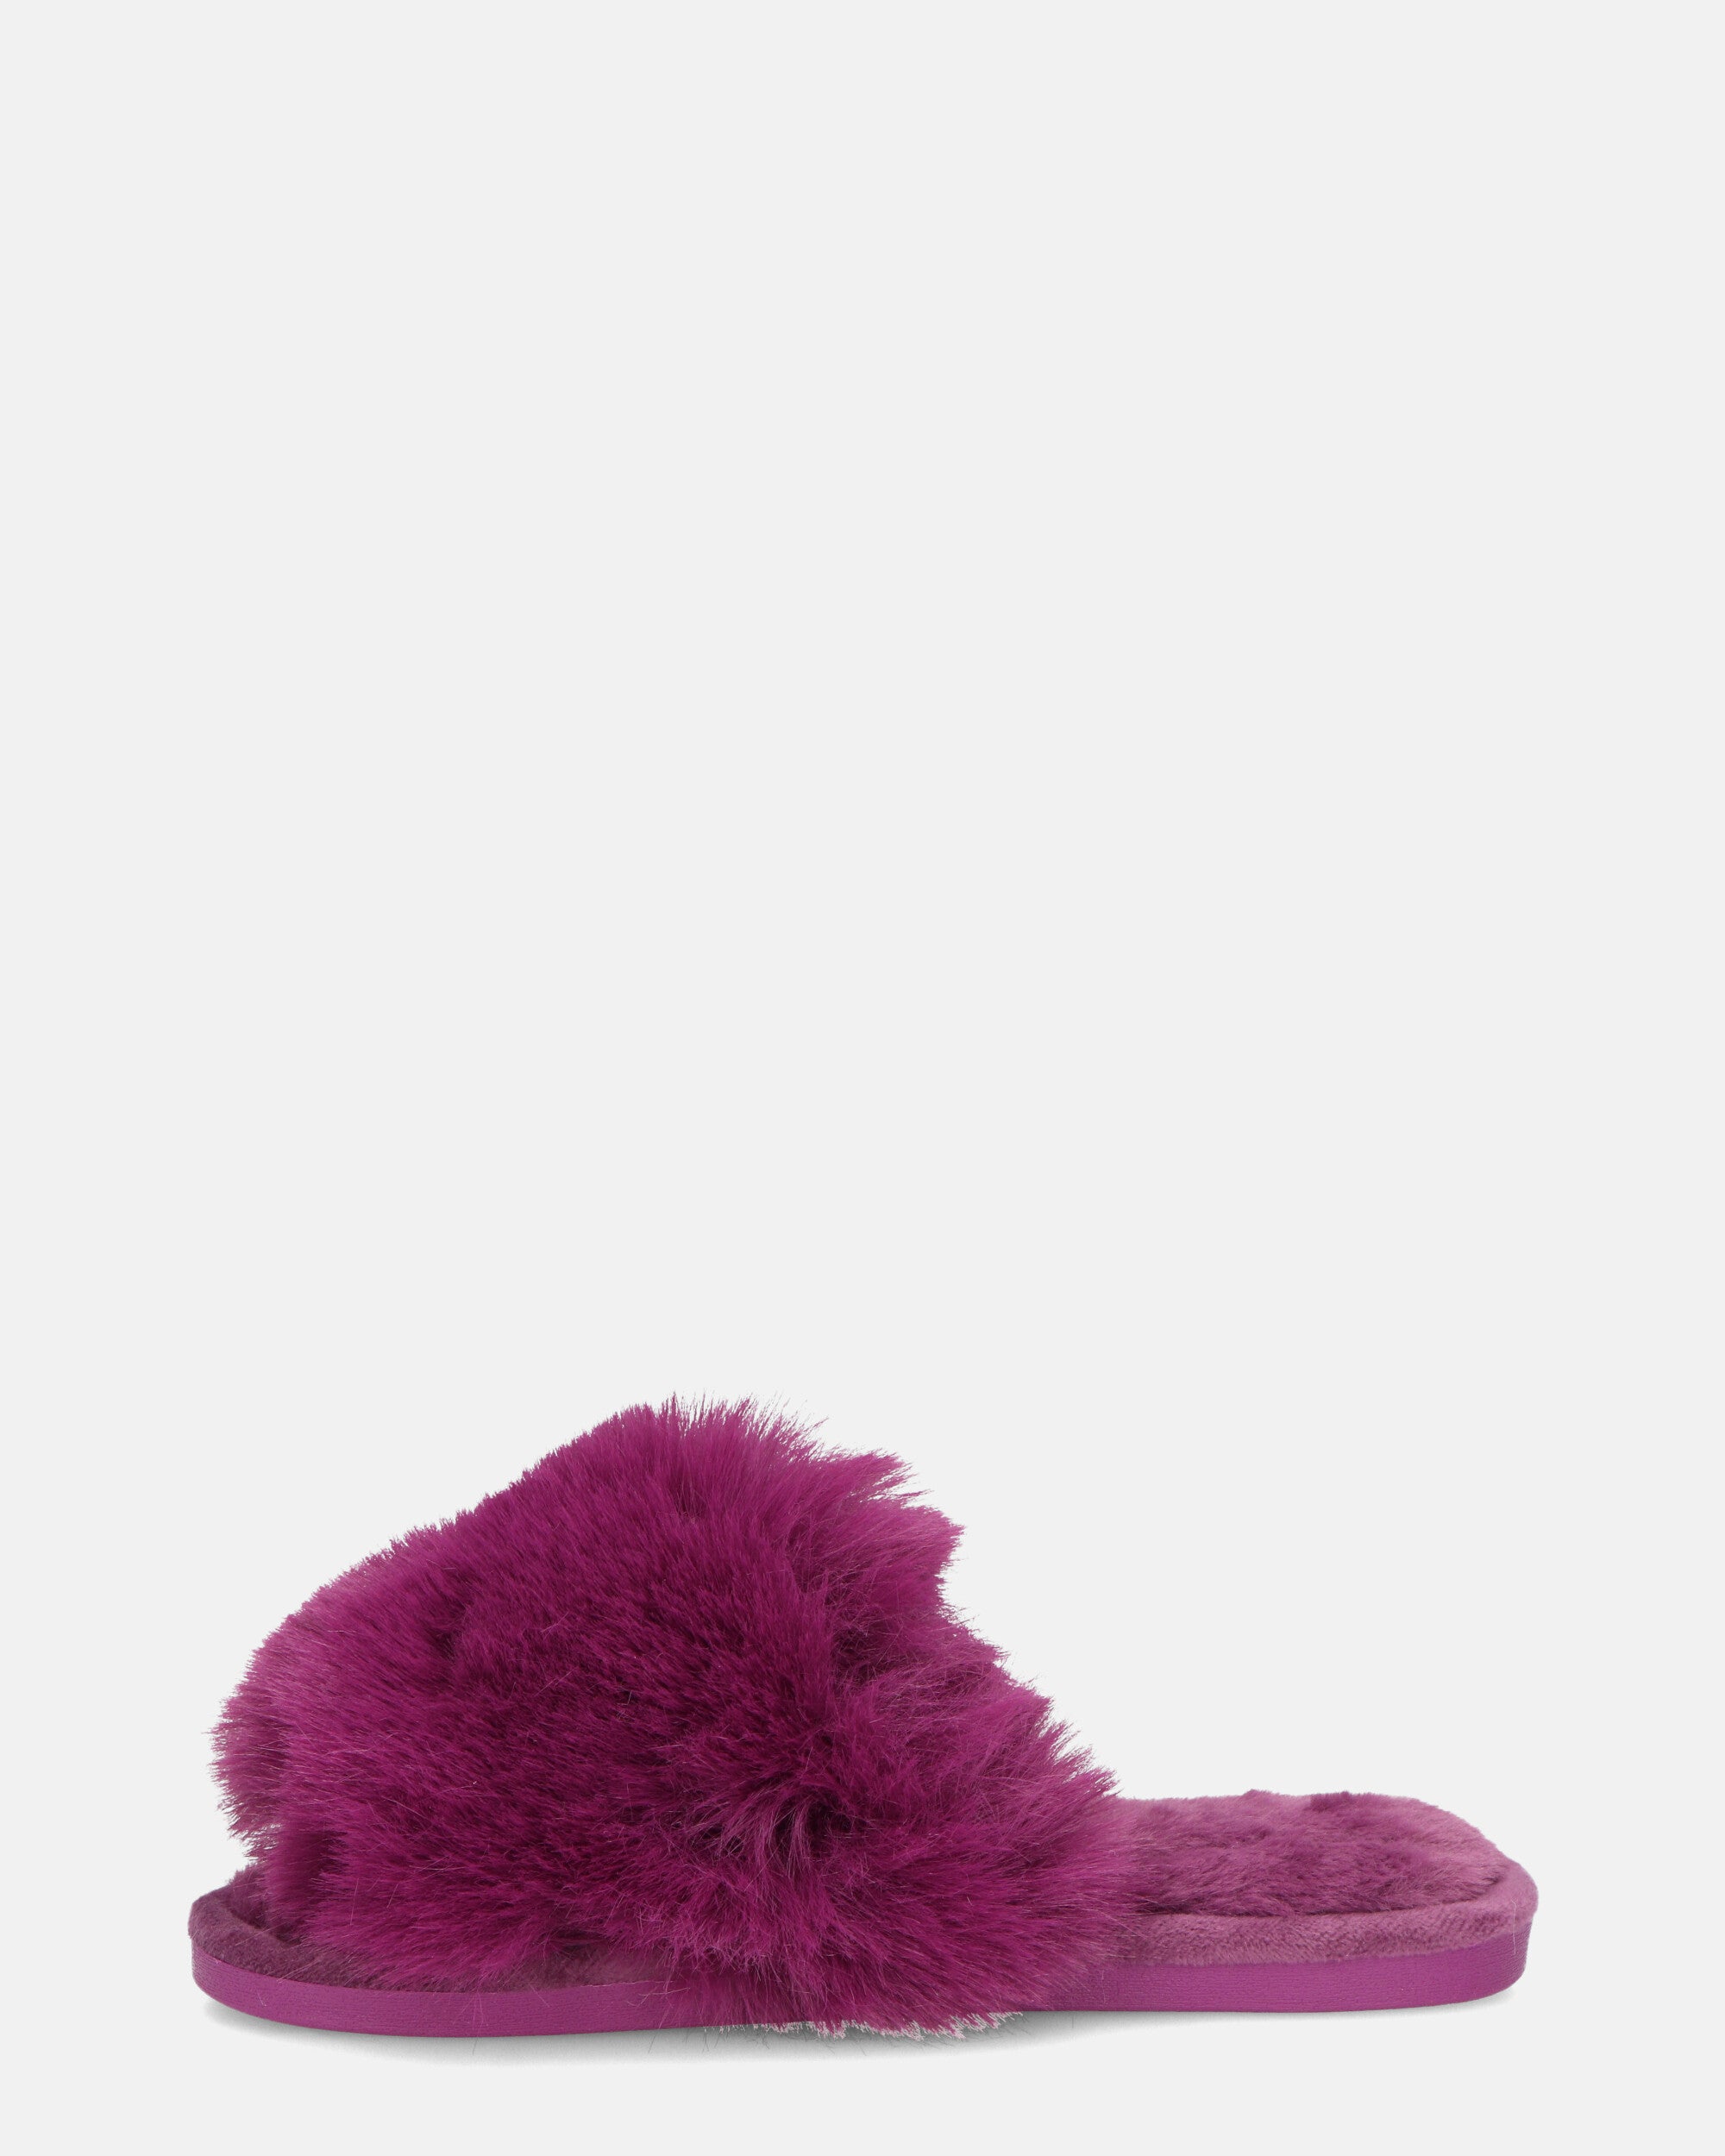 HAMA - pantuflas abiertas de pelo violeta